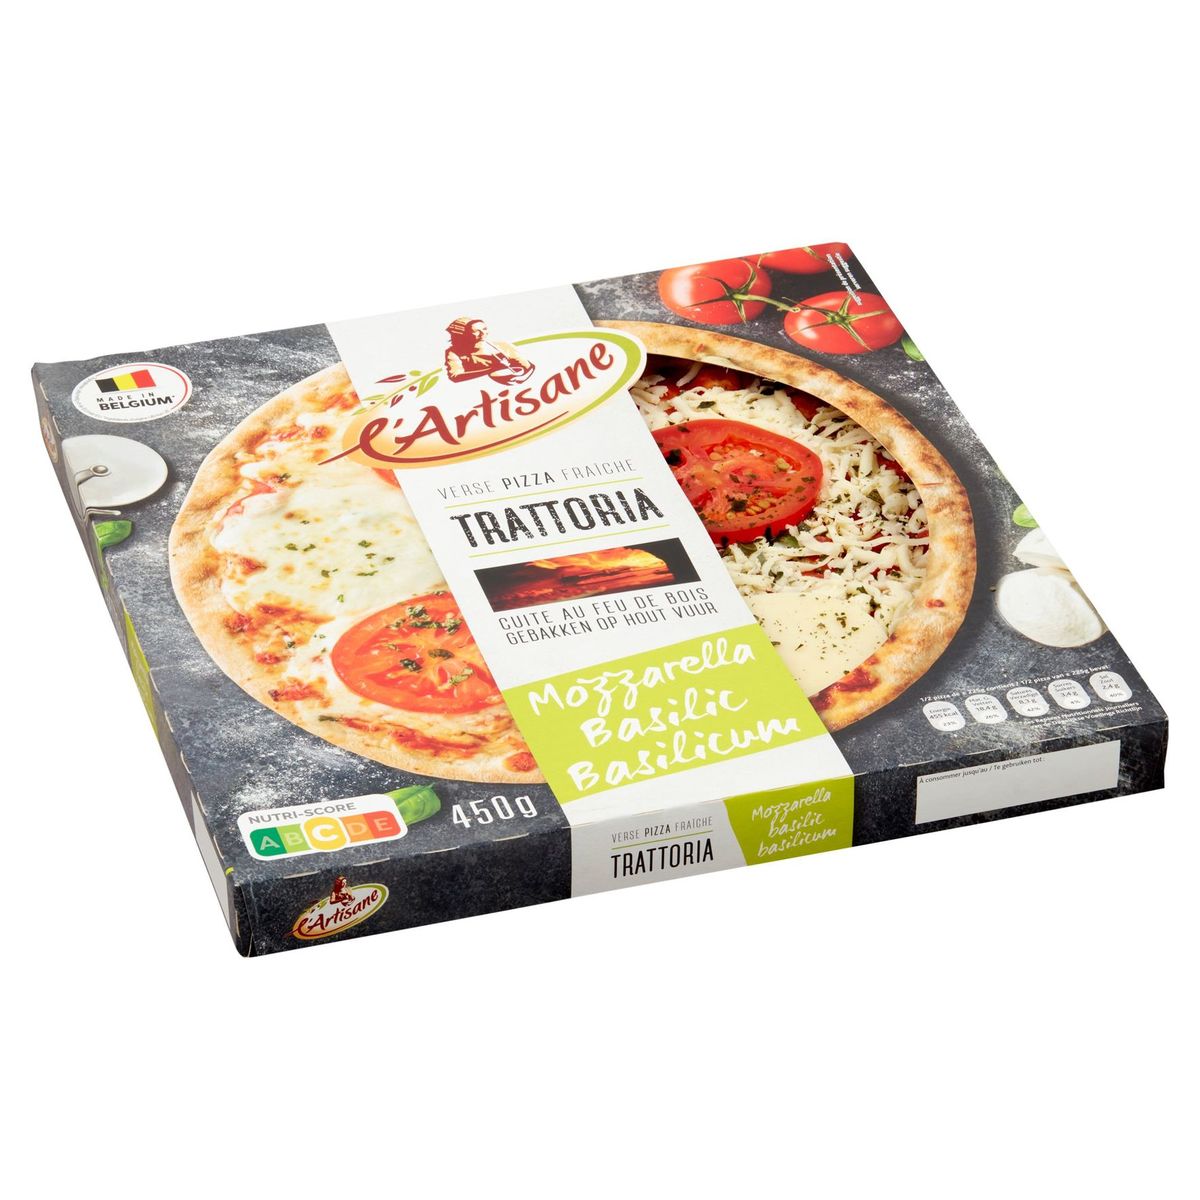 L'Artisane Trattoria Mozzarella Basilic Pizza Fraîche 450 g